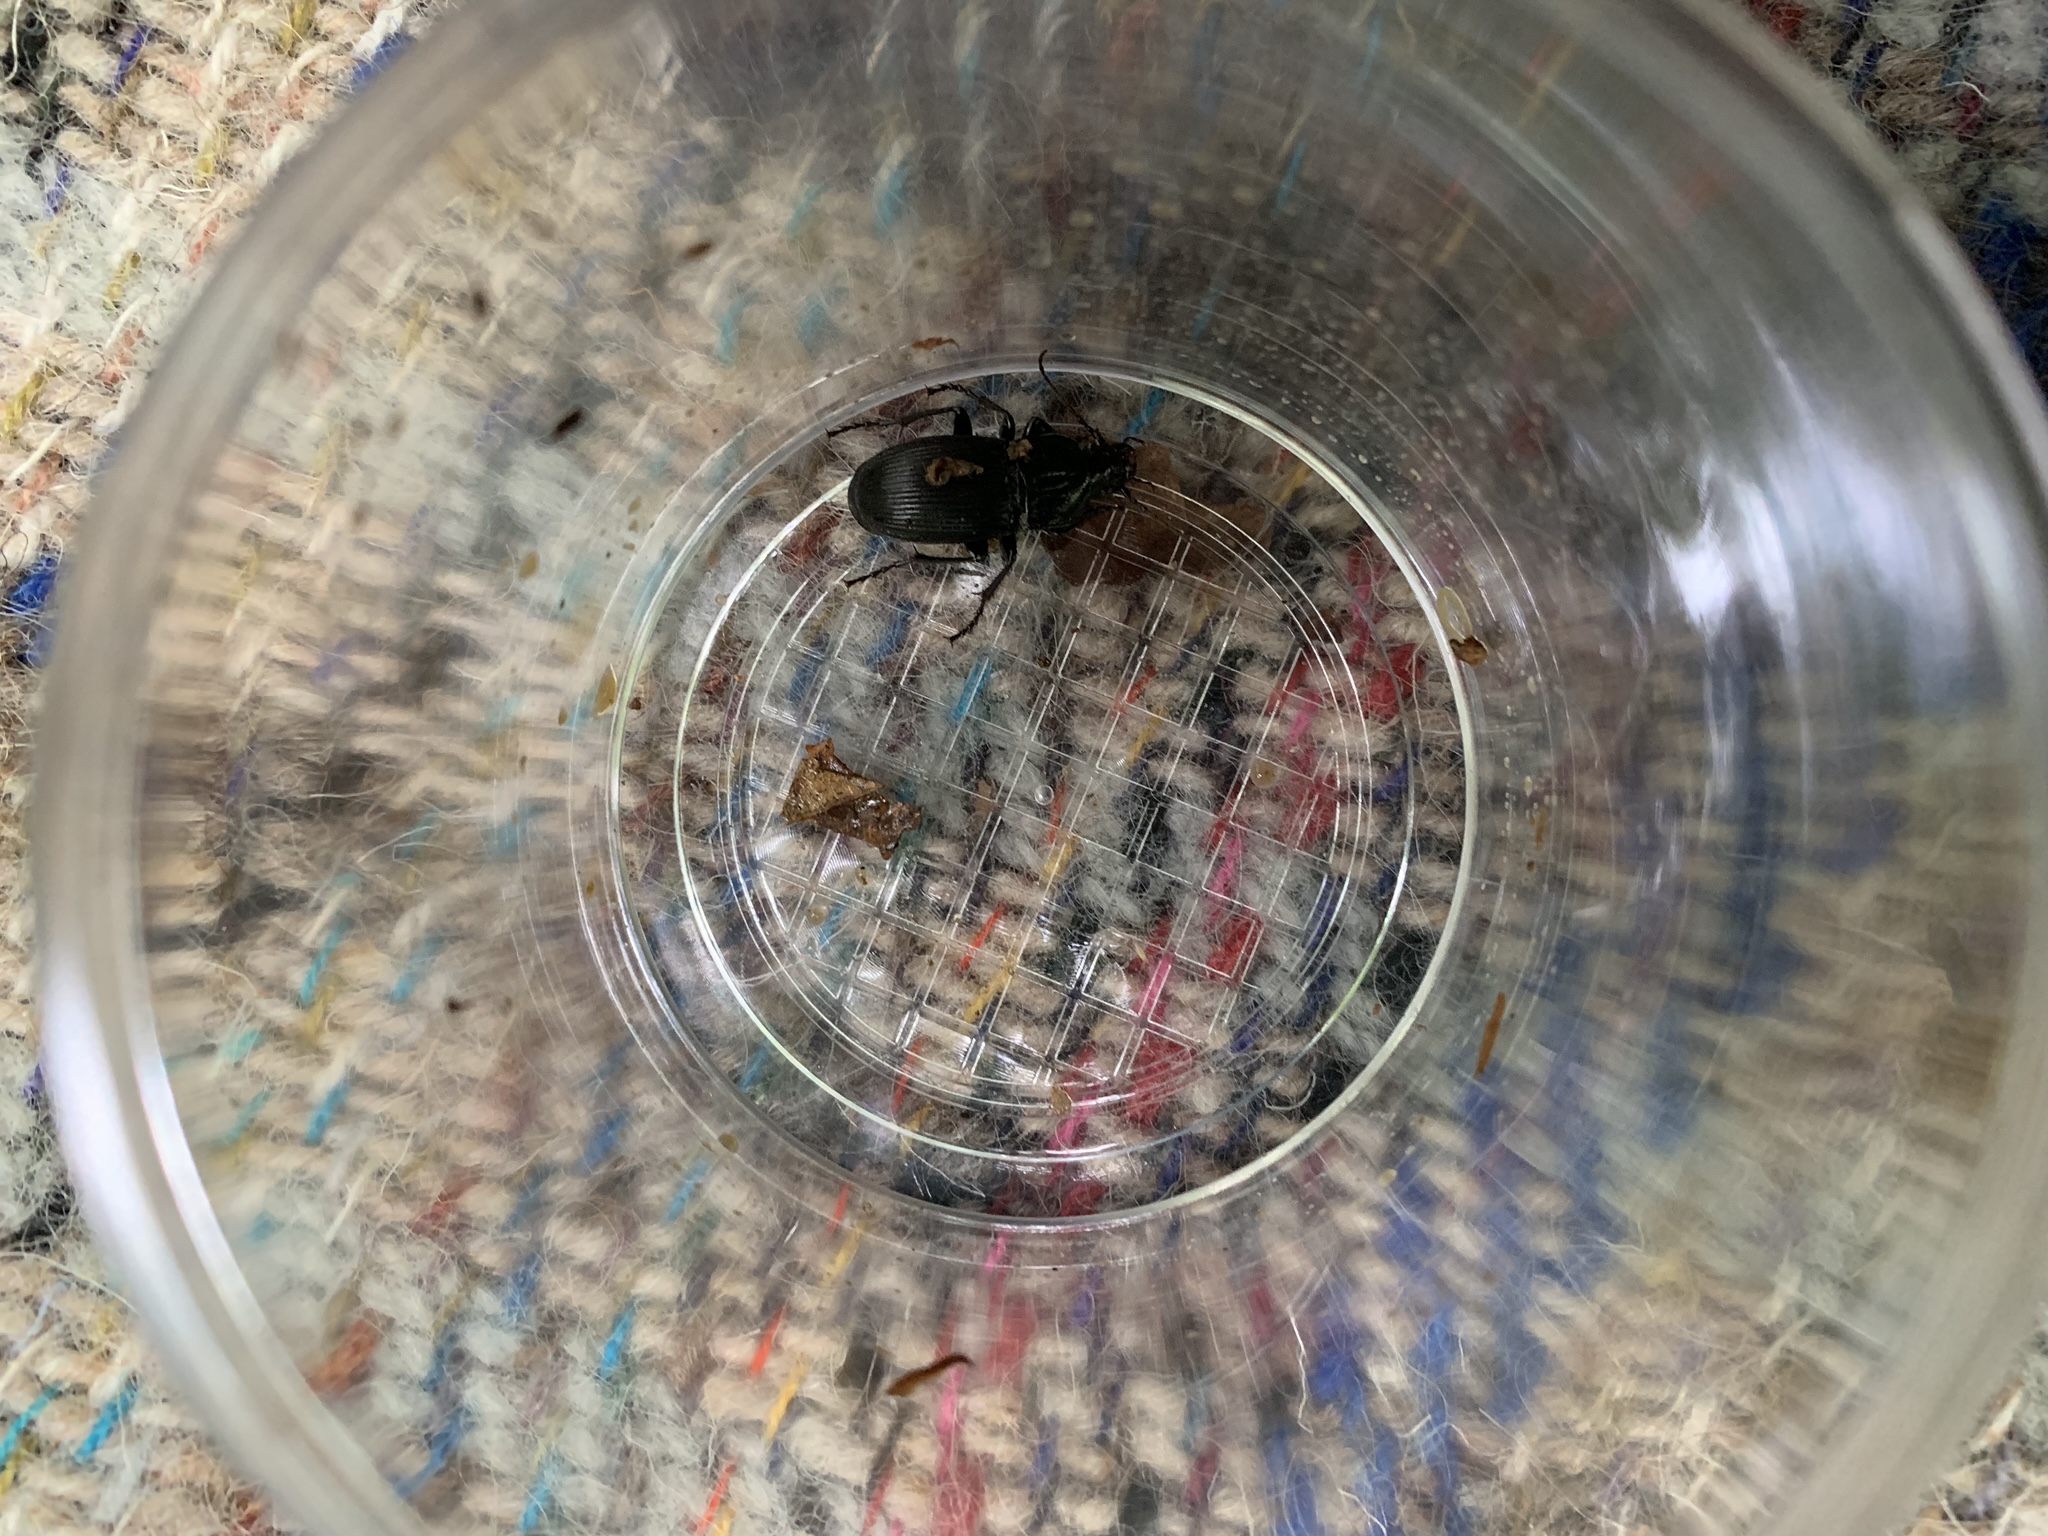 Minibeast hunt, beetle in a minibeast pot